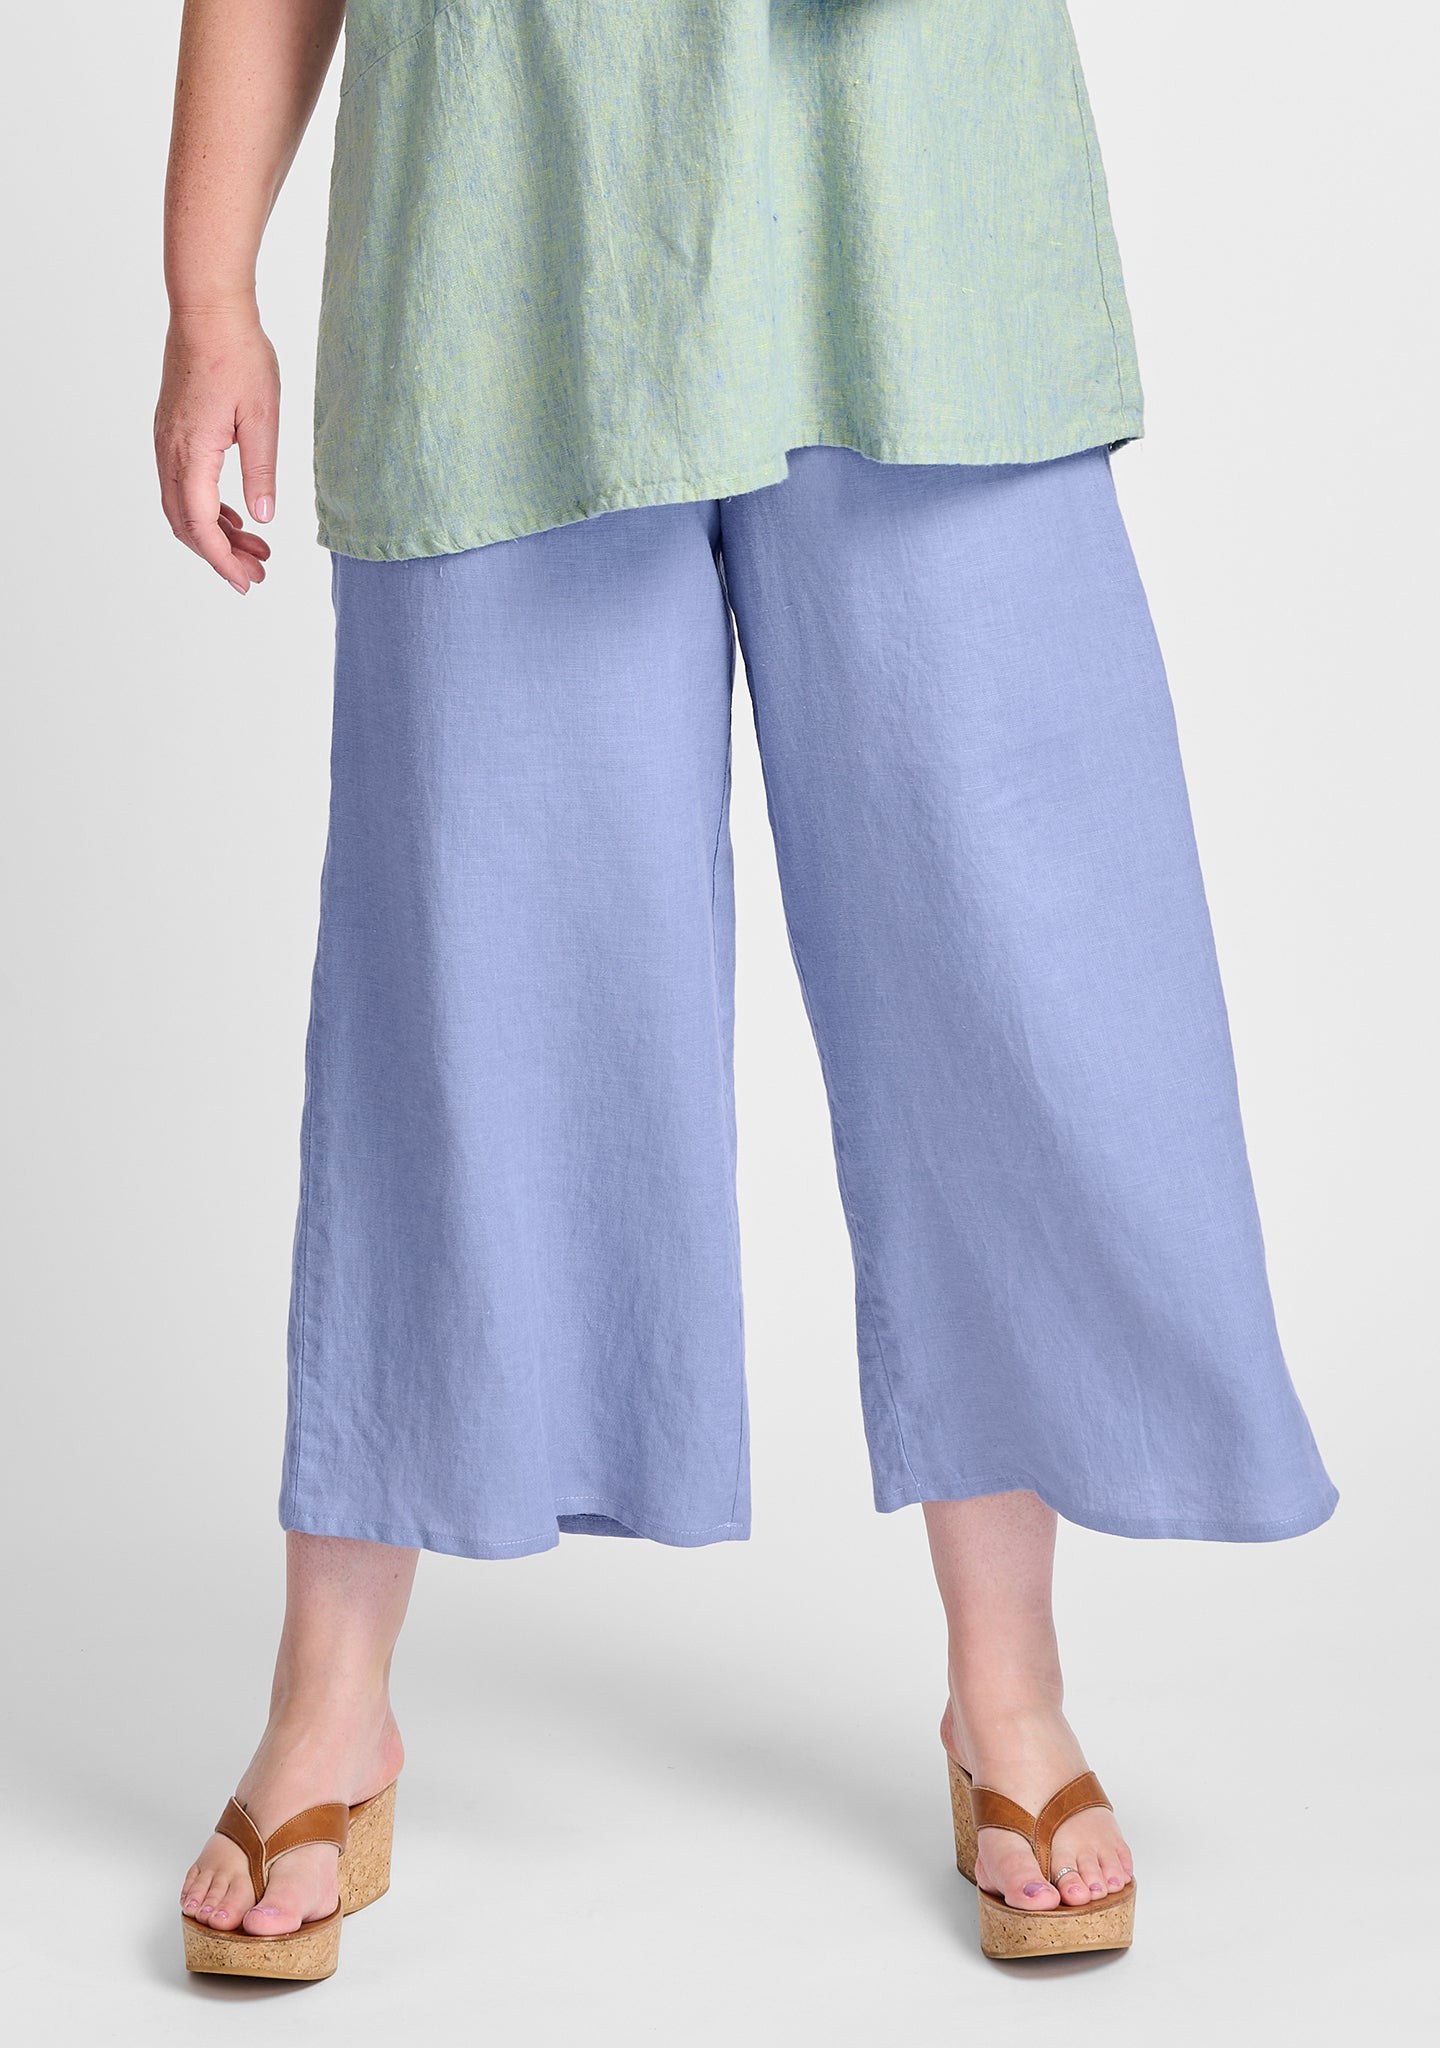 Light Blue Linen Elastic Waist Pants Women, Organic Clothing Wide Leg Pants  Women, Linen Clothing for Women -  Canada